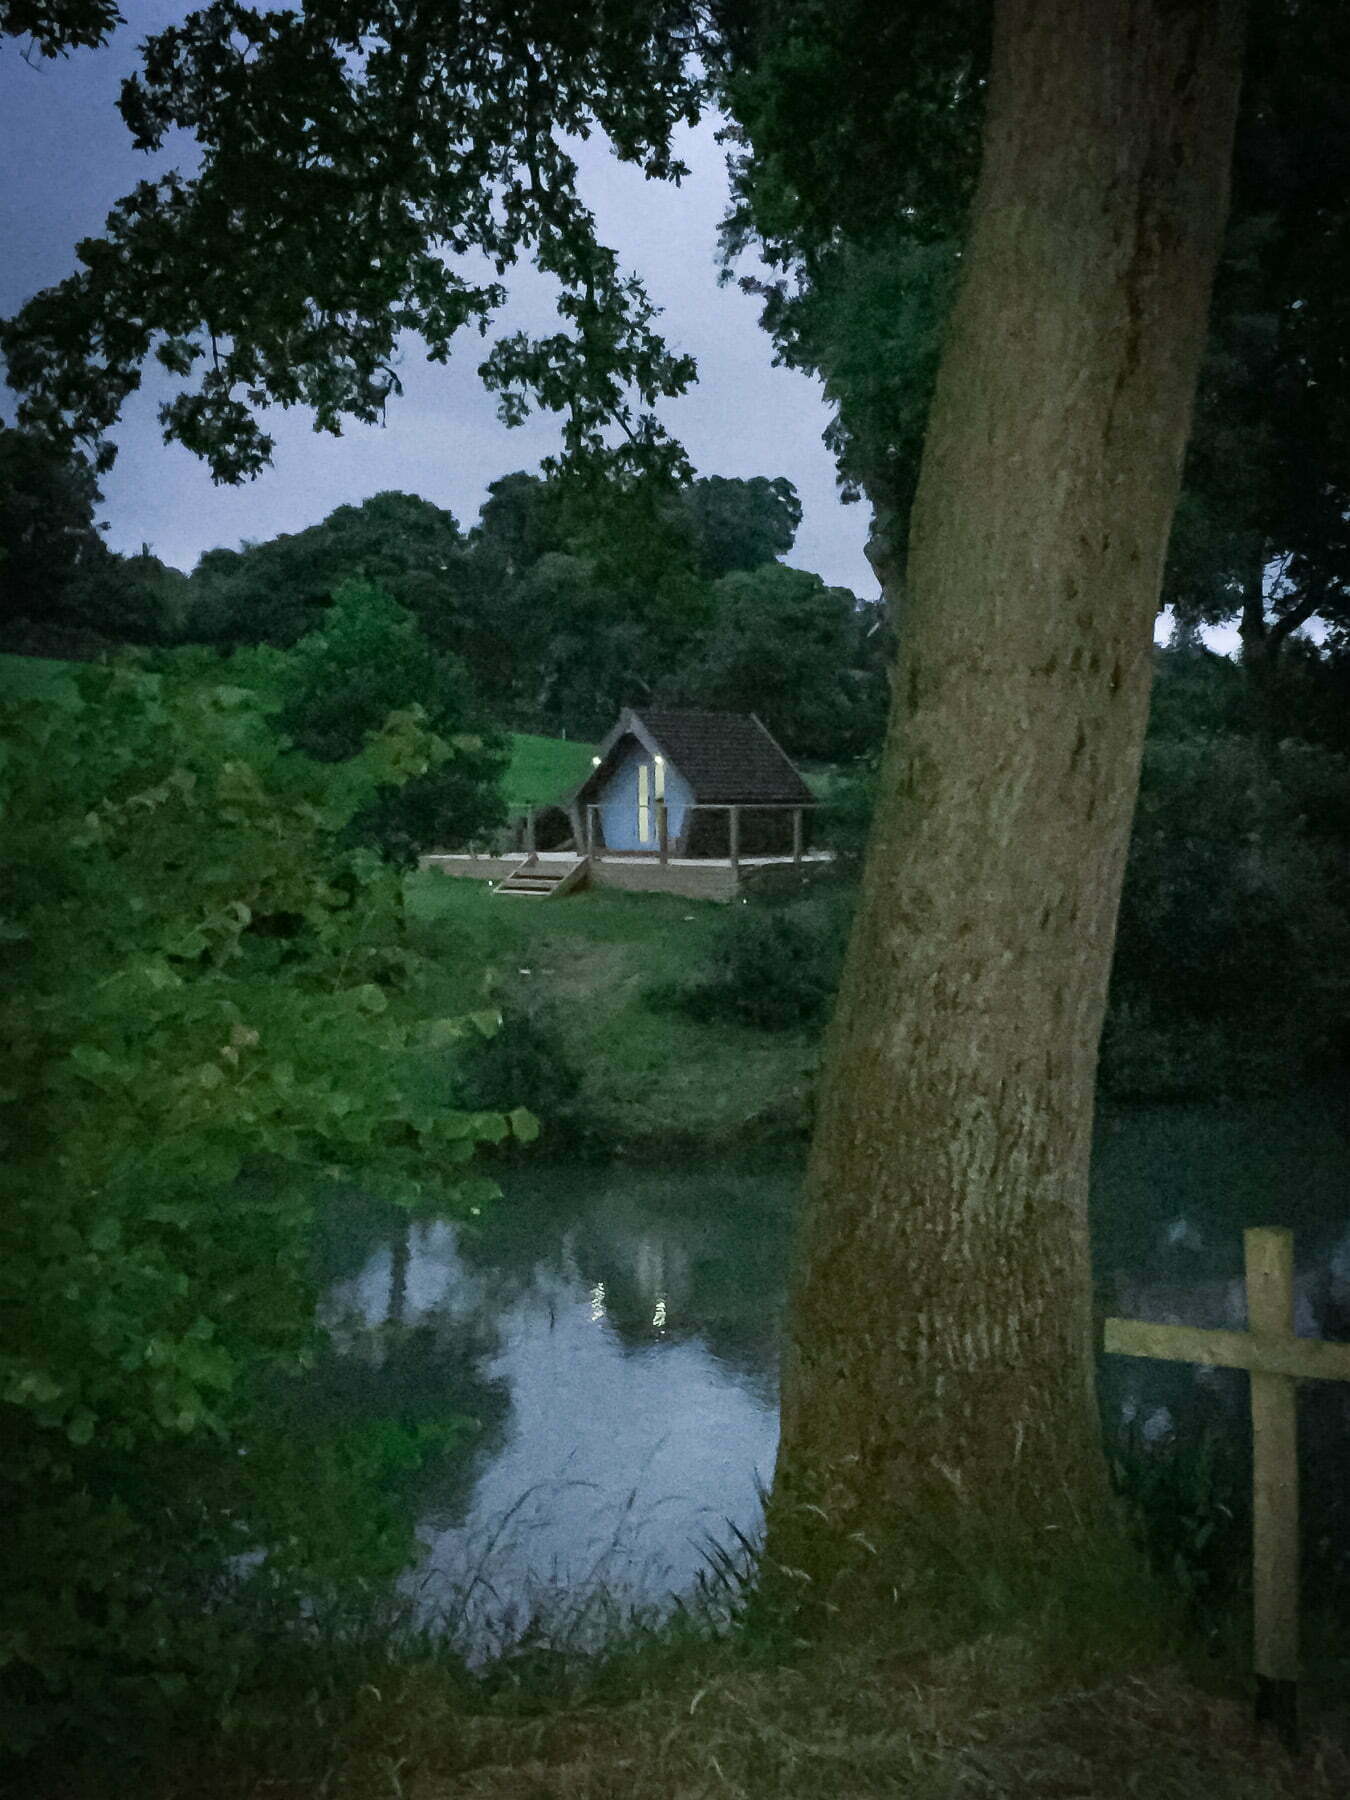 Painswick Glamping – Mill Pool Pod and lake at dusk